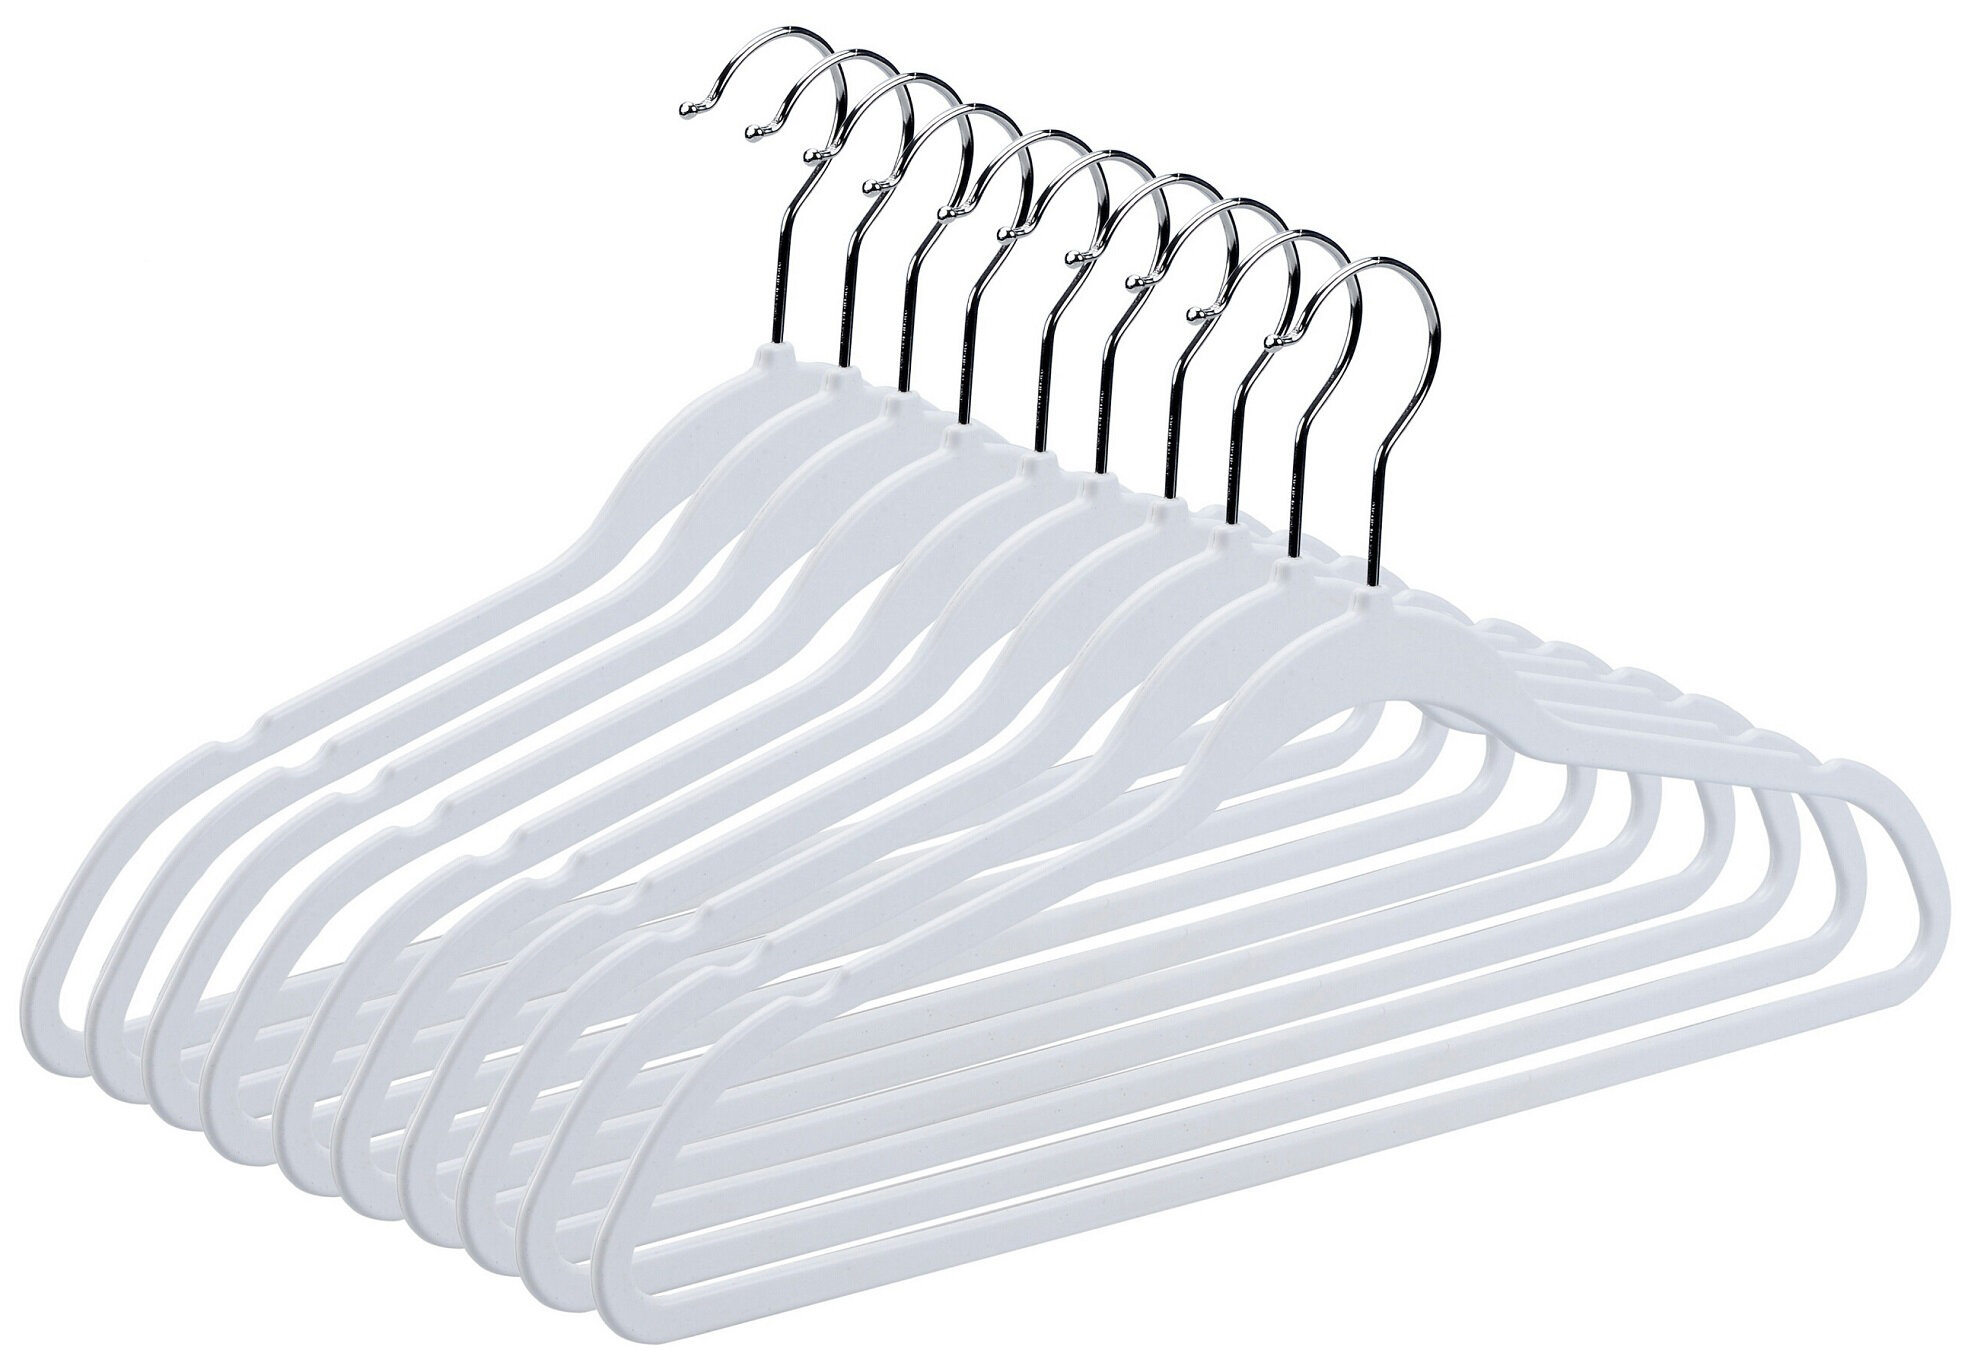 Unclutter Clothes Hangers 100 Pack - Plastic Hangers 10 Pack - Clothes  Hangers for Coat, Shirts & Pants - Durable Coat Hangers (100, Black)